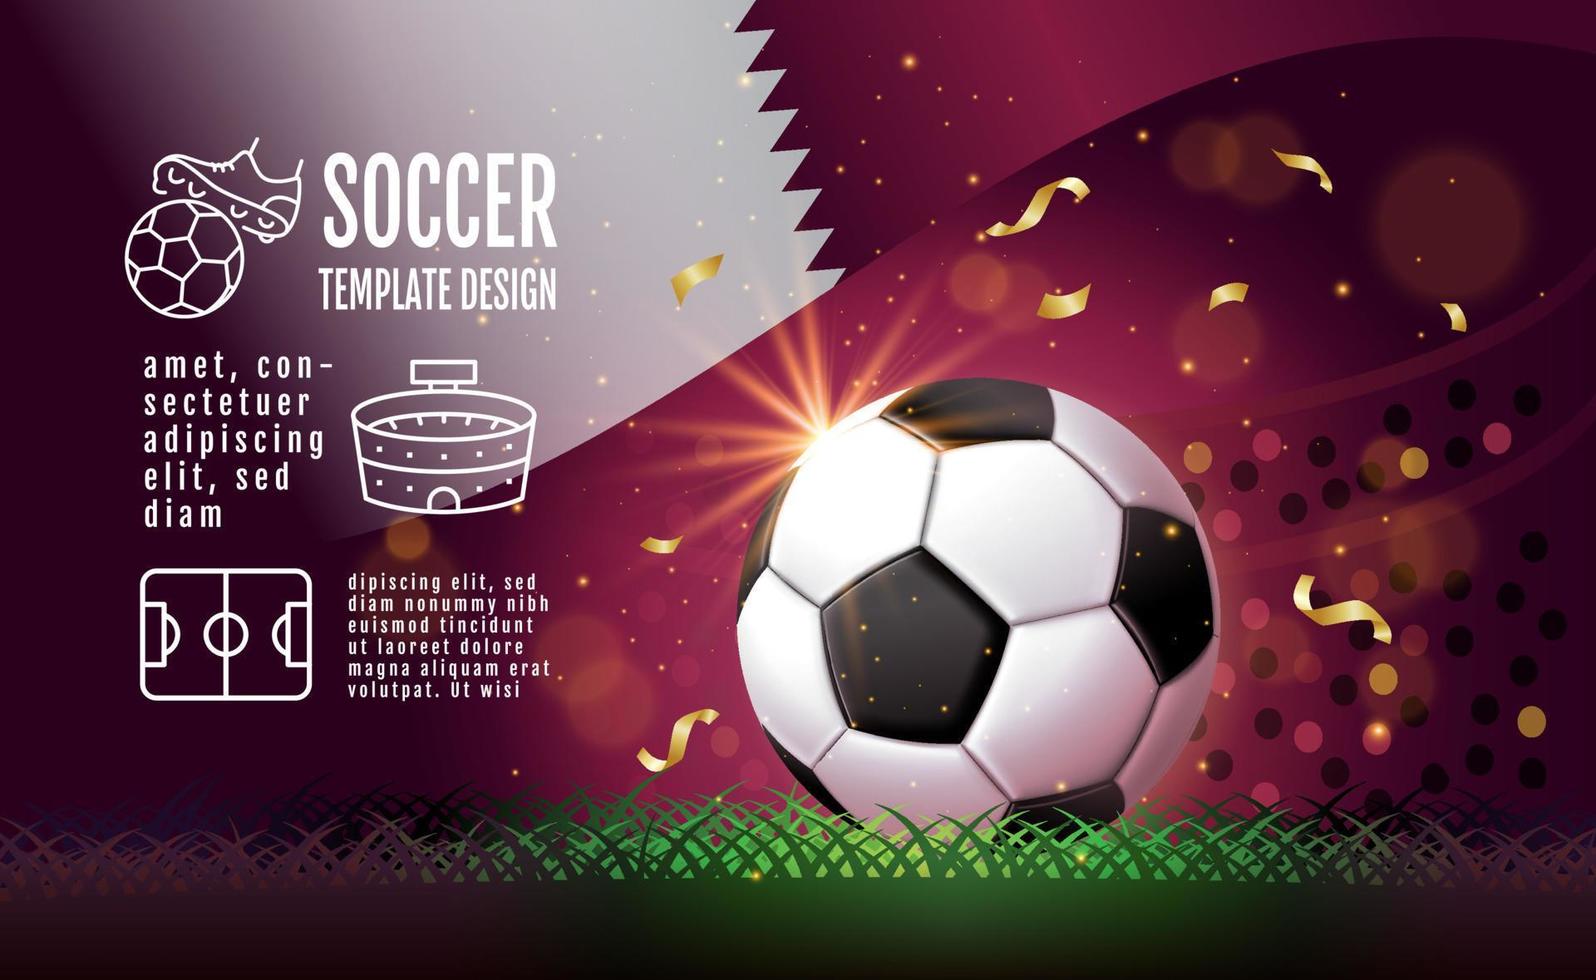 Fußball-Layout-Template-Design, Fußball, lila Magenta-Ton, Sport-Hintergrund vektor